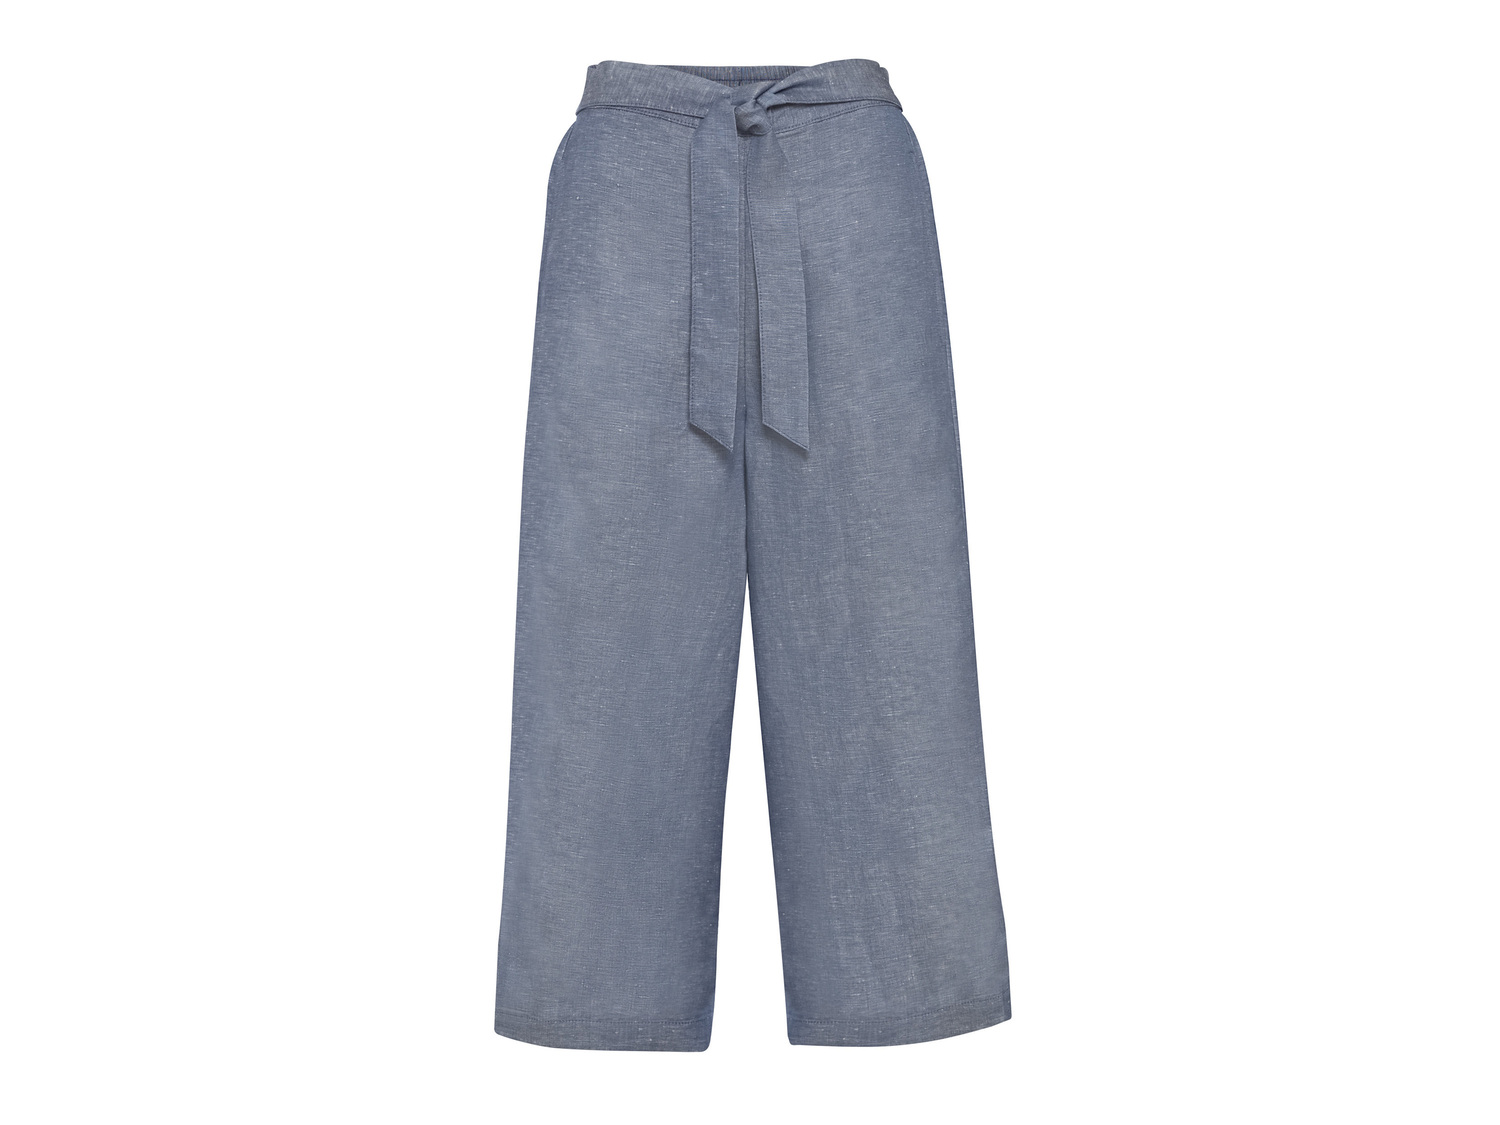 Pantaloni culotte in lino da donna Esmara, prezzo 8.99 &#8364; 
Misure: 38-48
Taglie ...